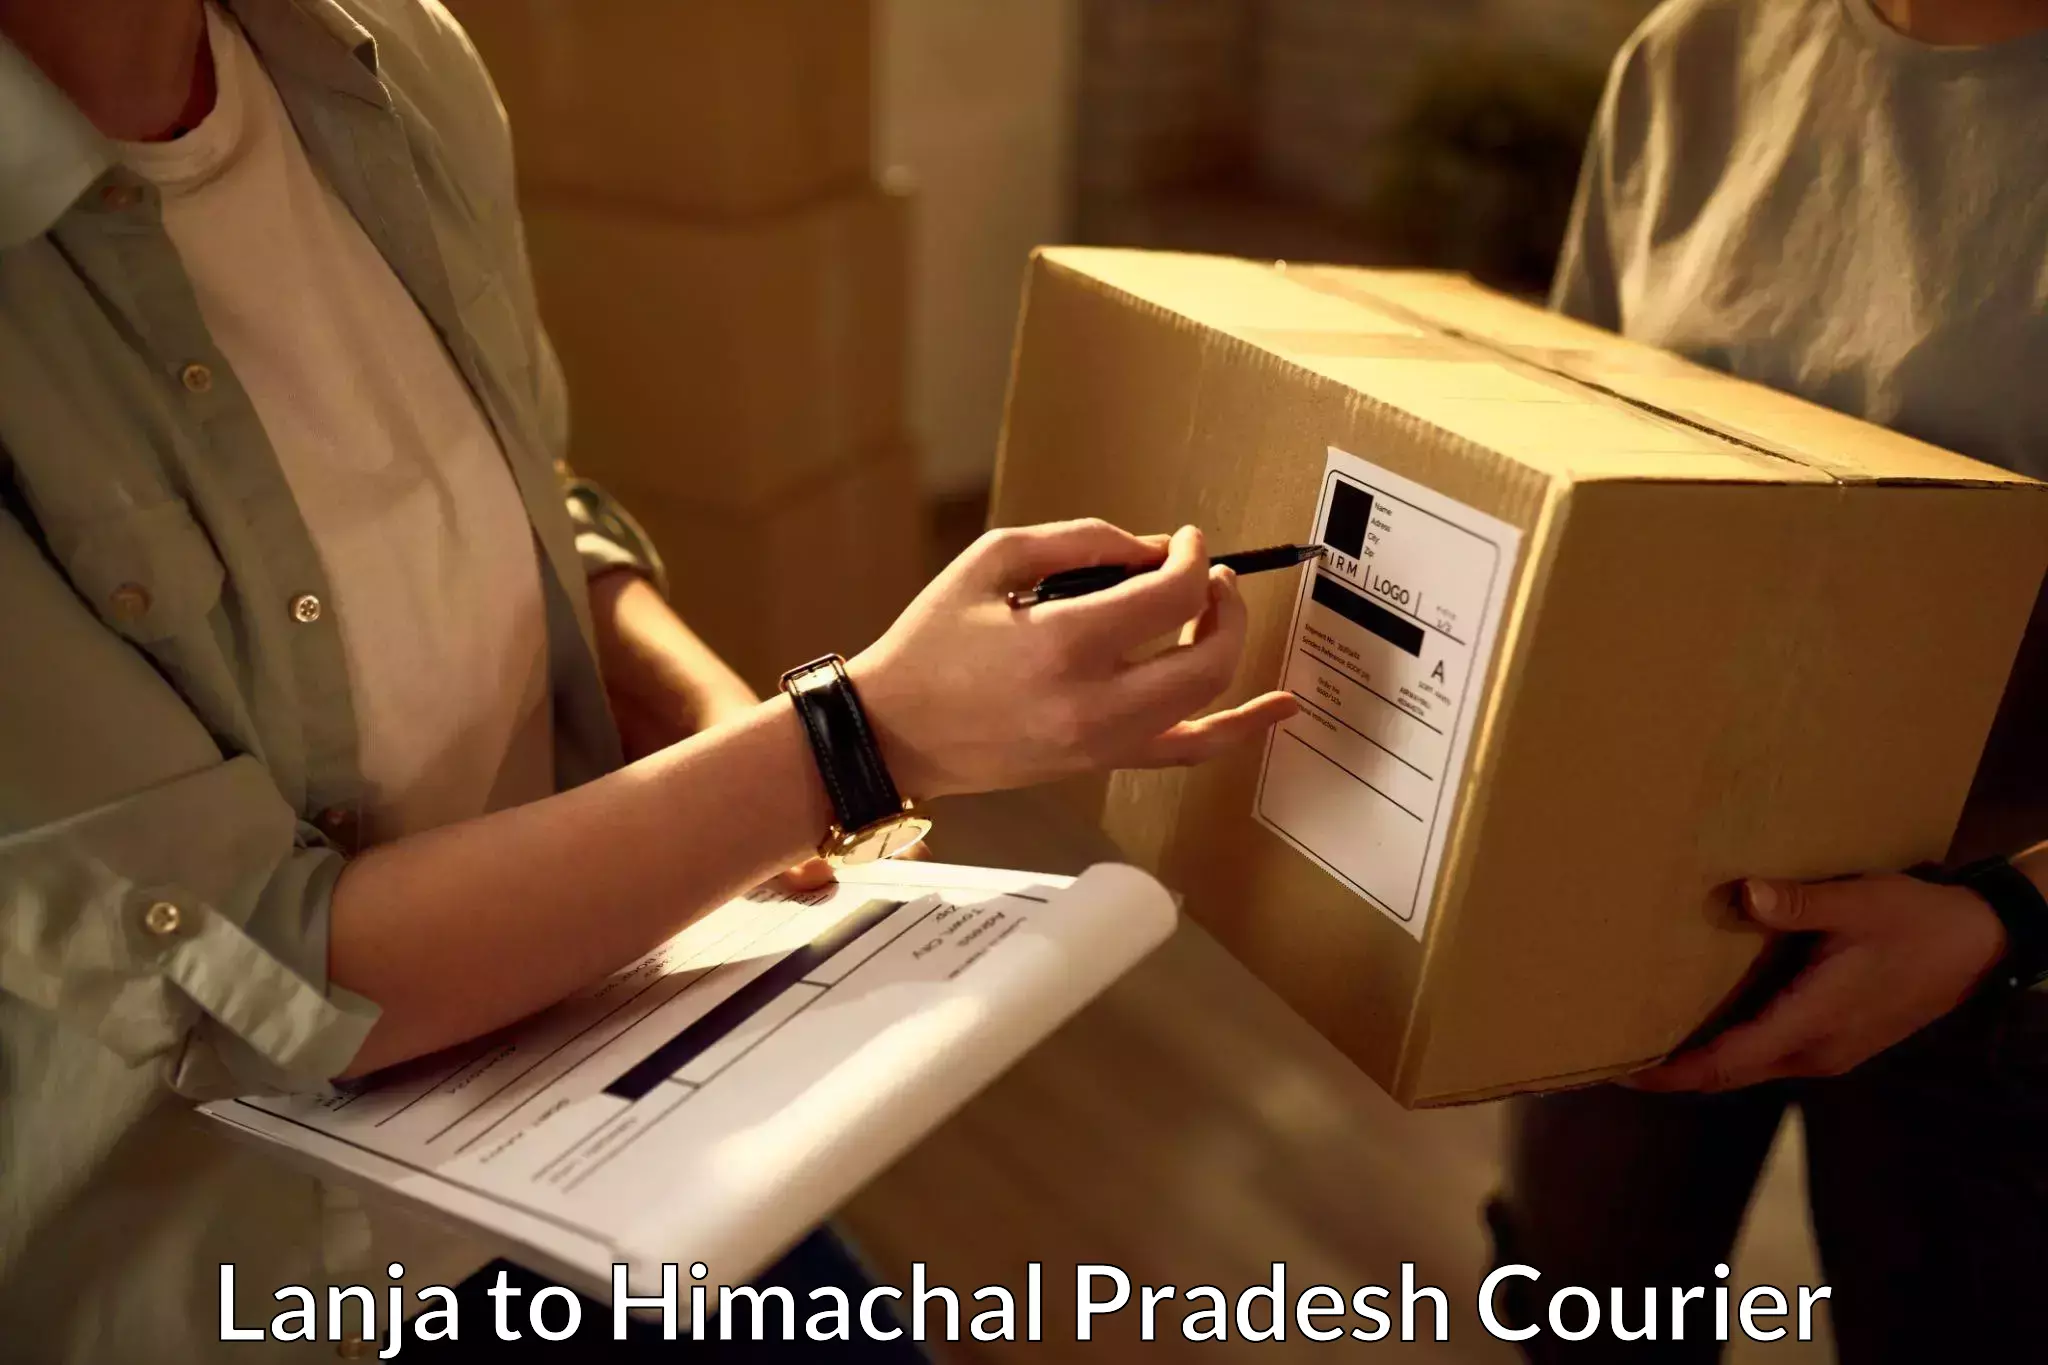 Multi-service courier options Lanja to Jukhala